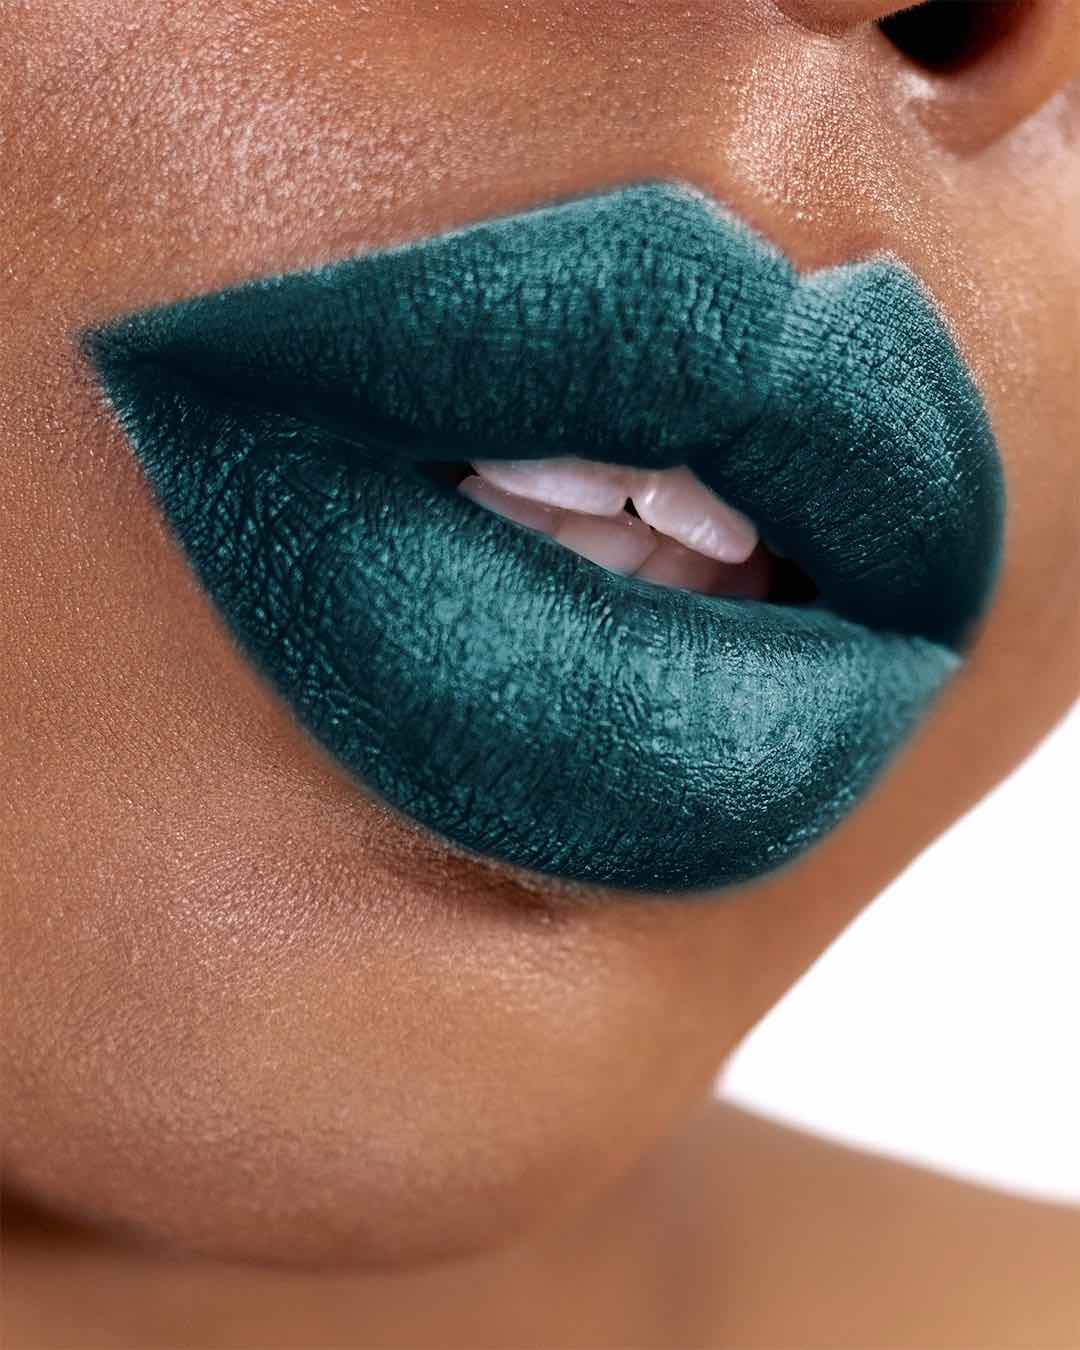 green lipstick on dark skin